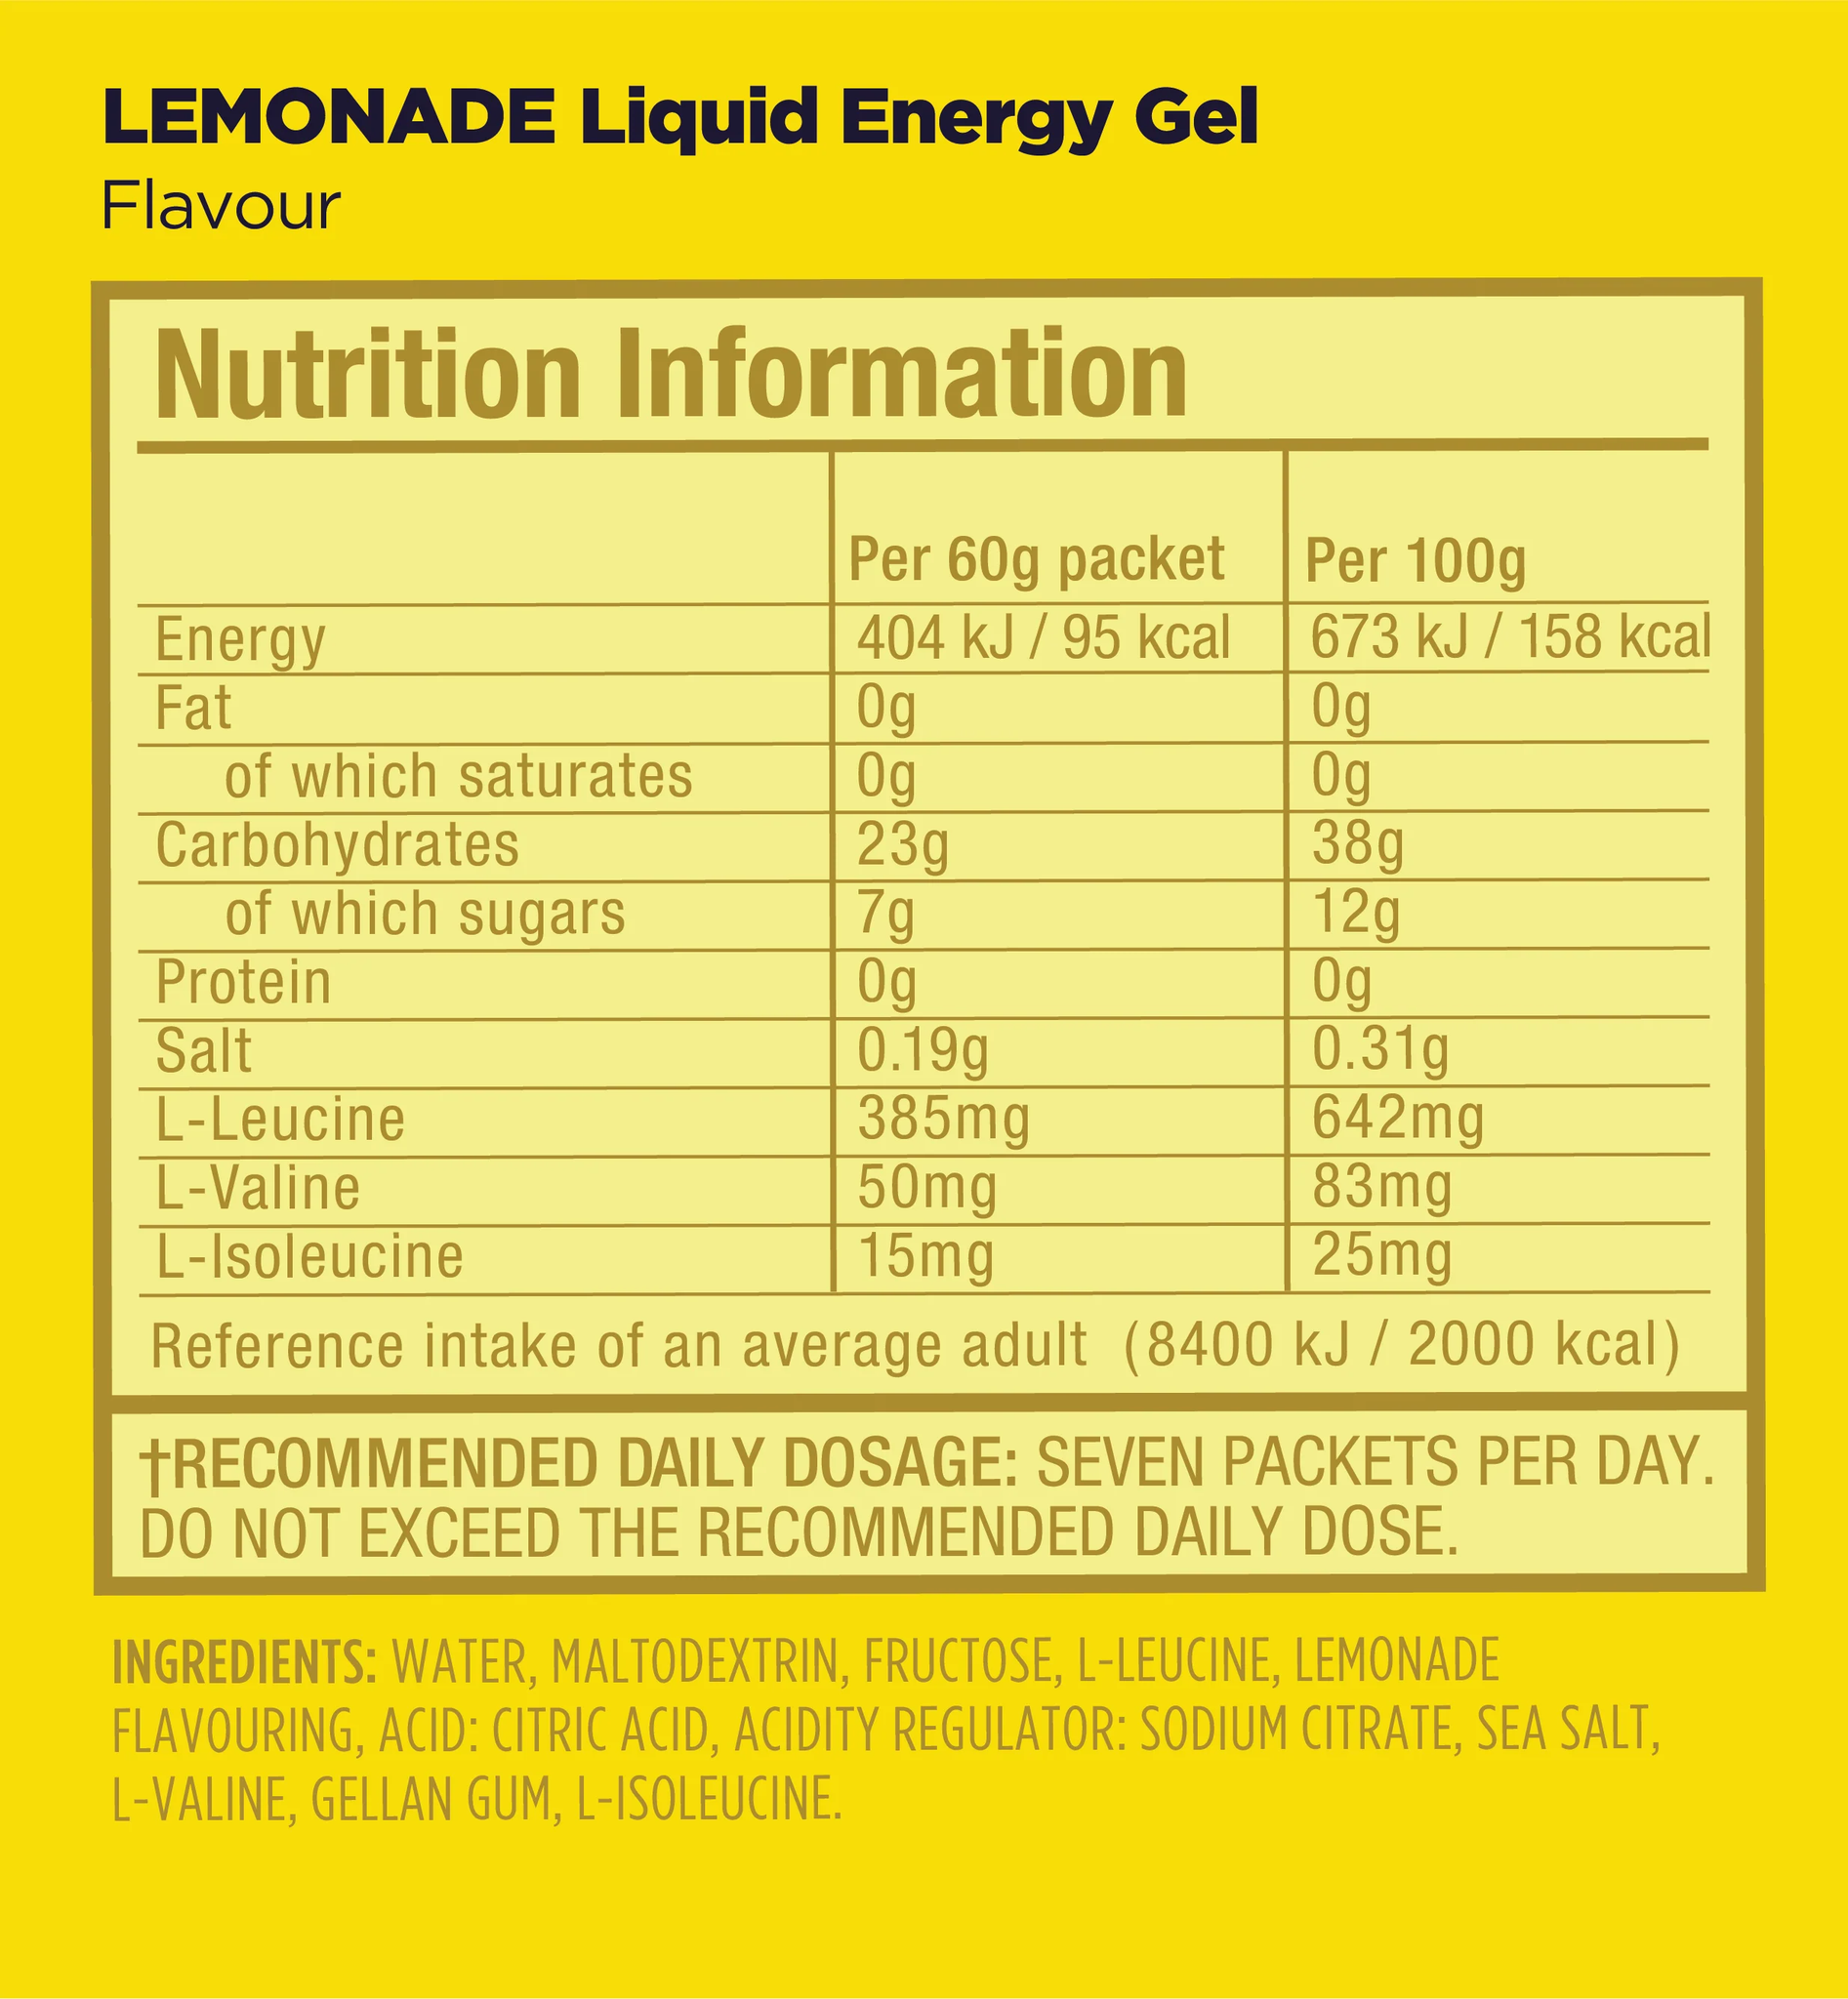 GU Liquid Energy Gel - Lemonade